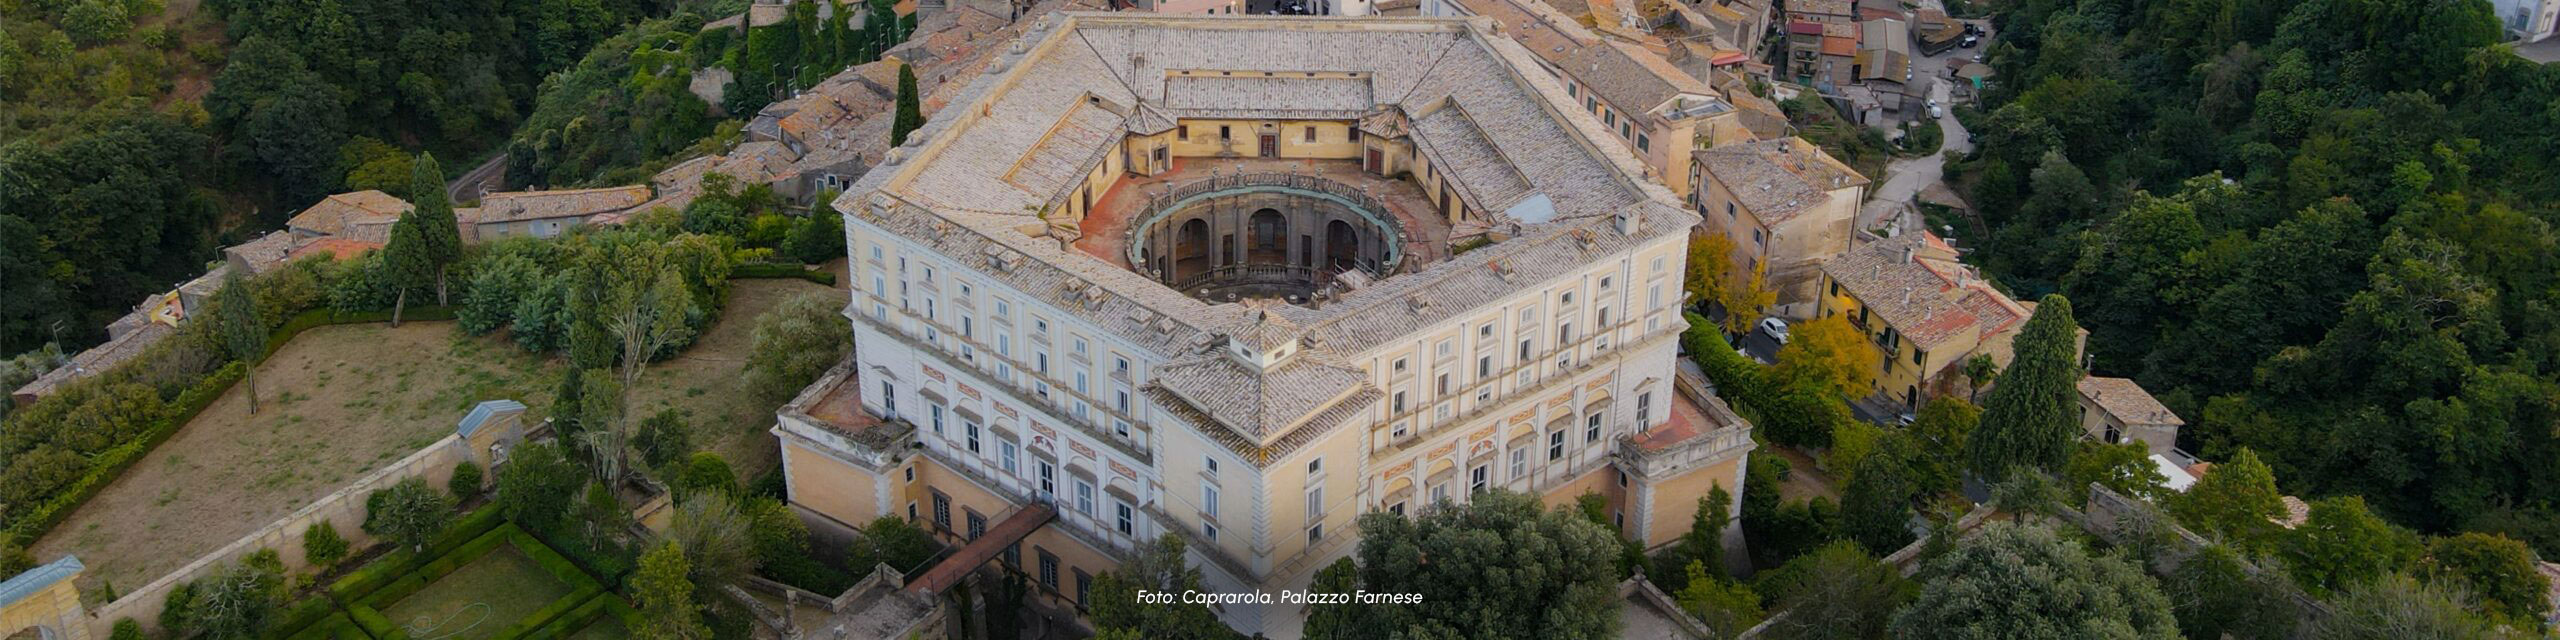 Copertina dell'itinerario Palazzo Borromeo. Ambasciata Italiana presso la Santa Sede. LAZIO-wide-scaled-1.jpg